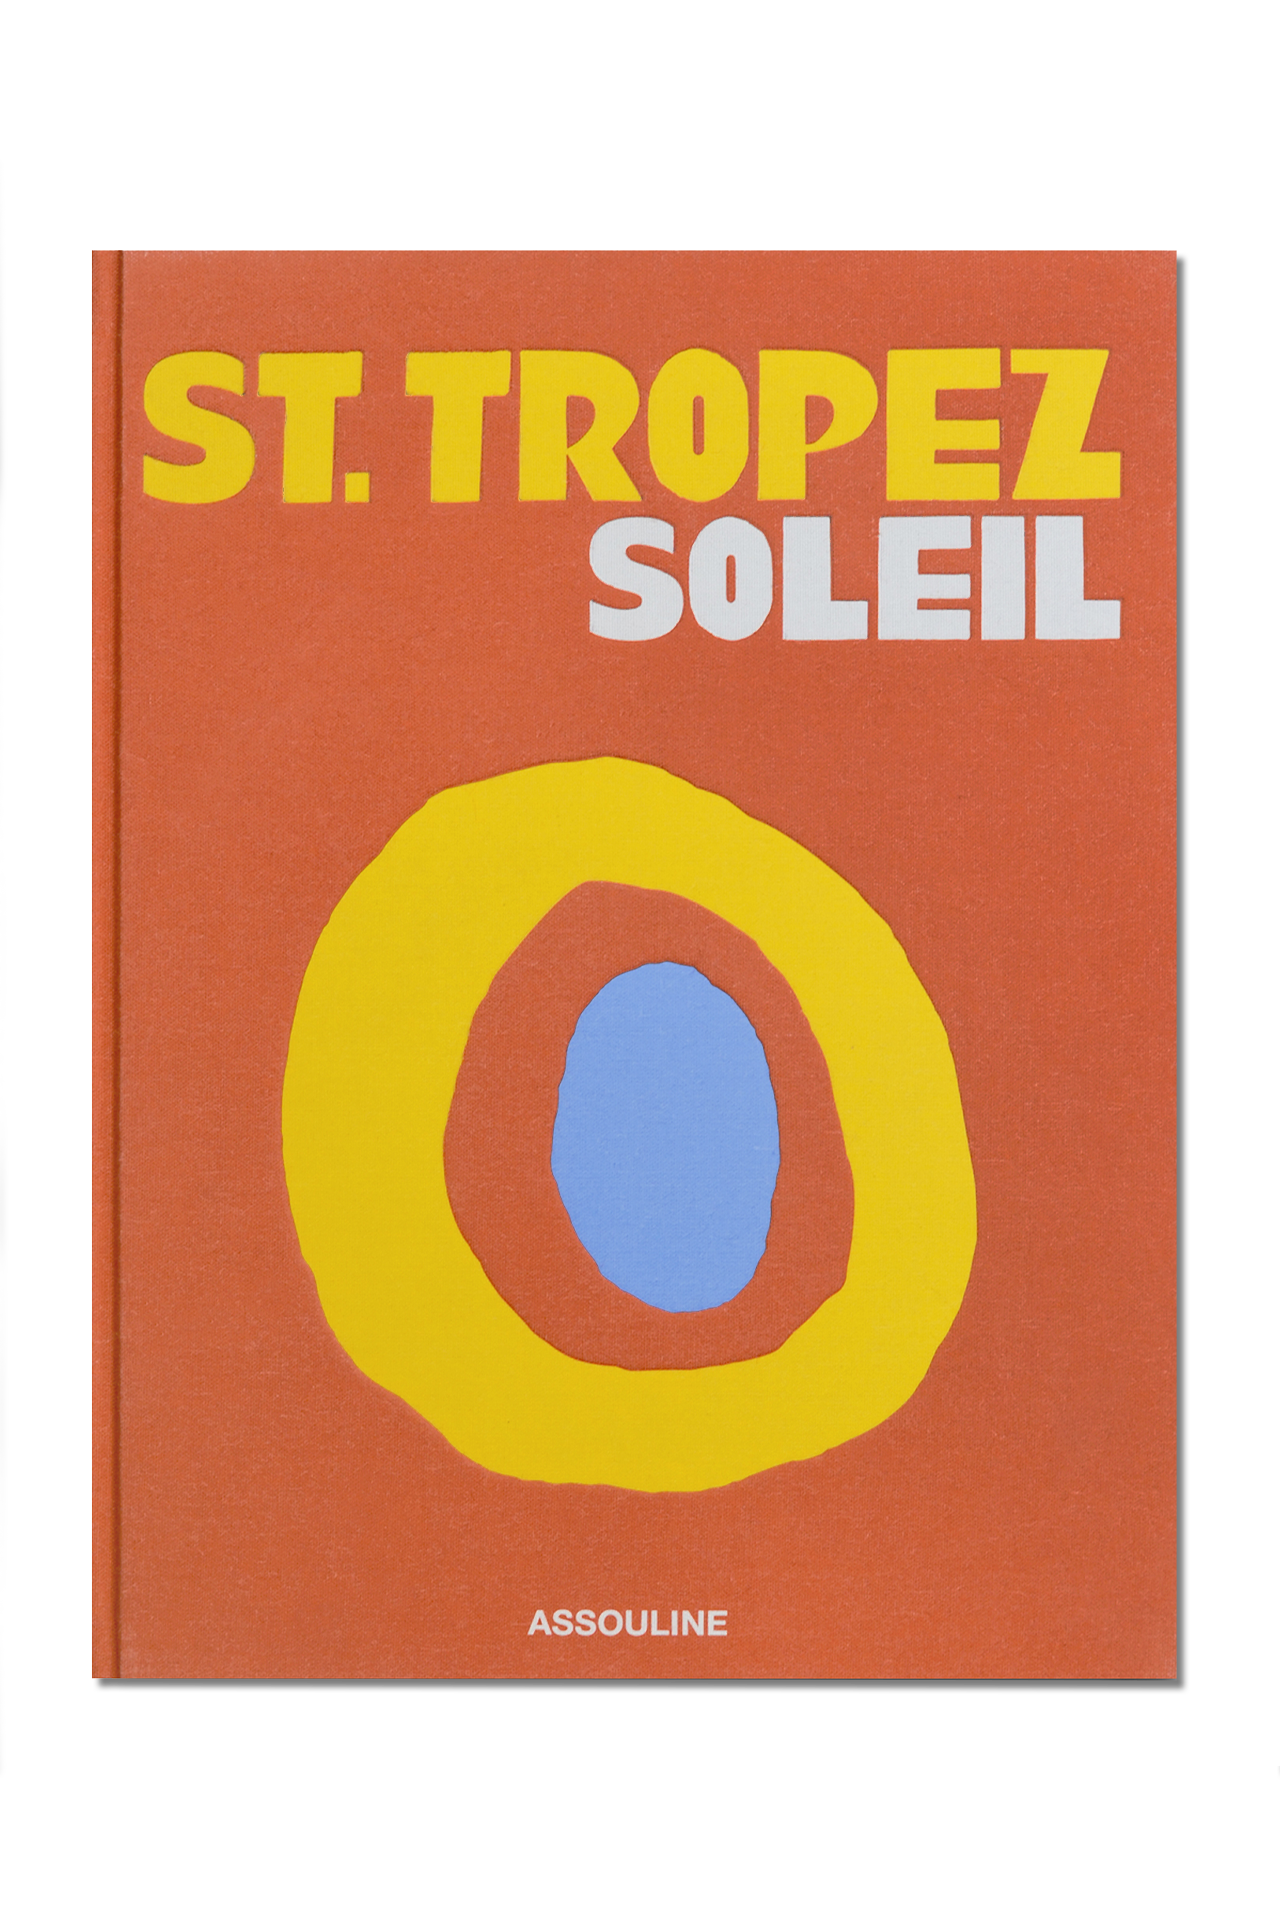 St. Tropez Soleil (4611022061683)